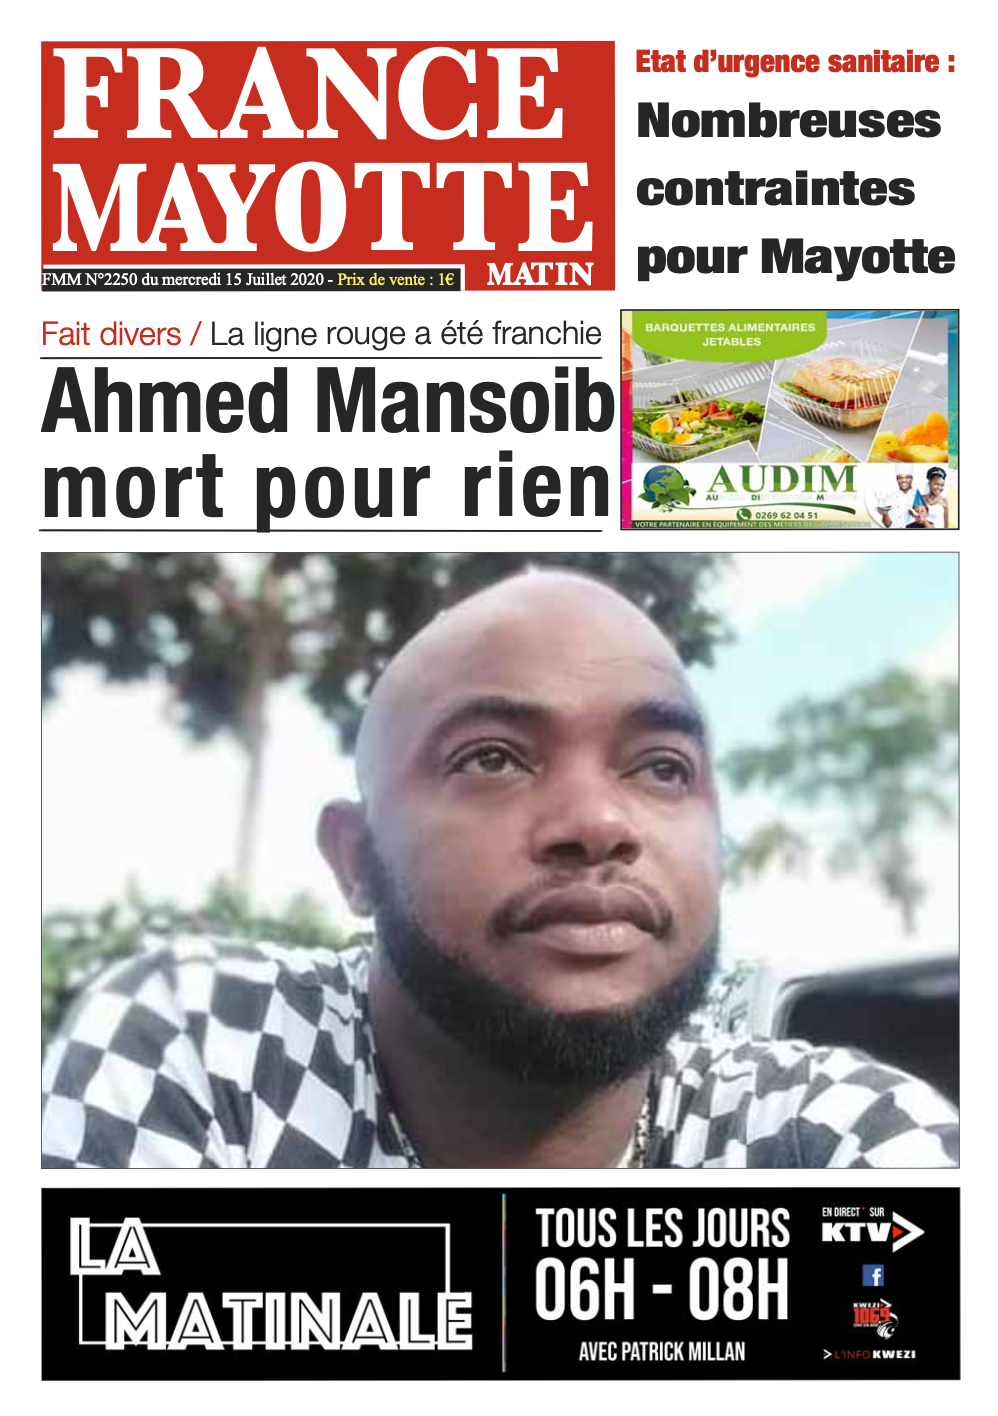 France Mayotte Mercredi 15 juillet 2020